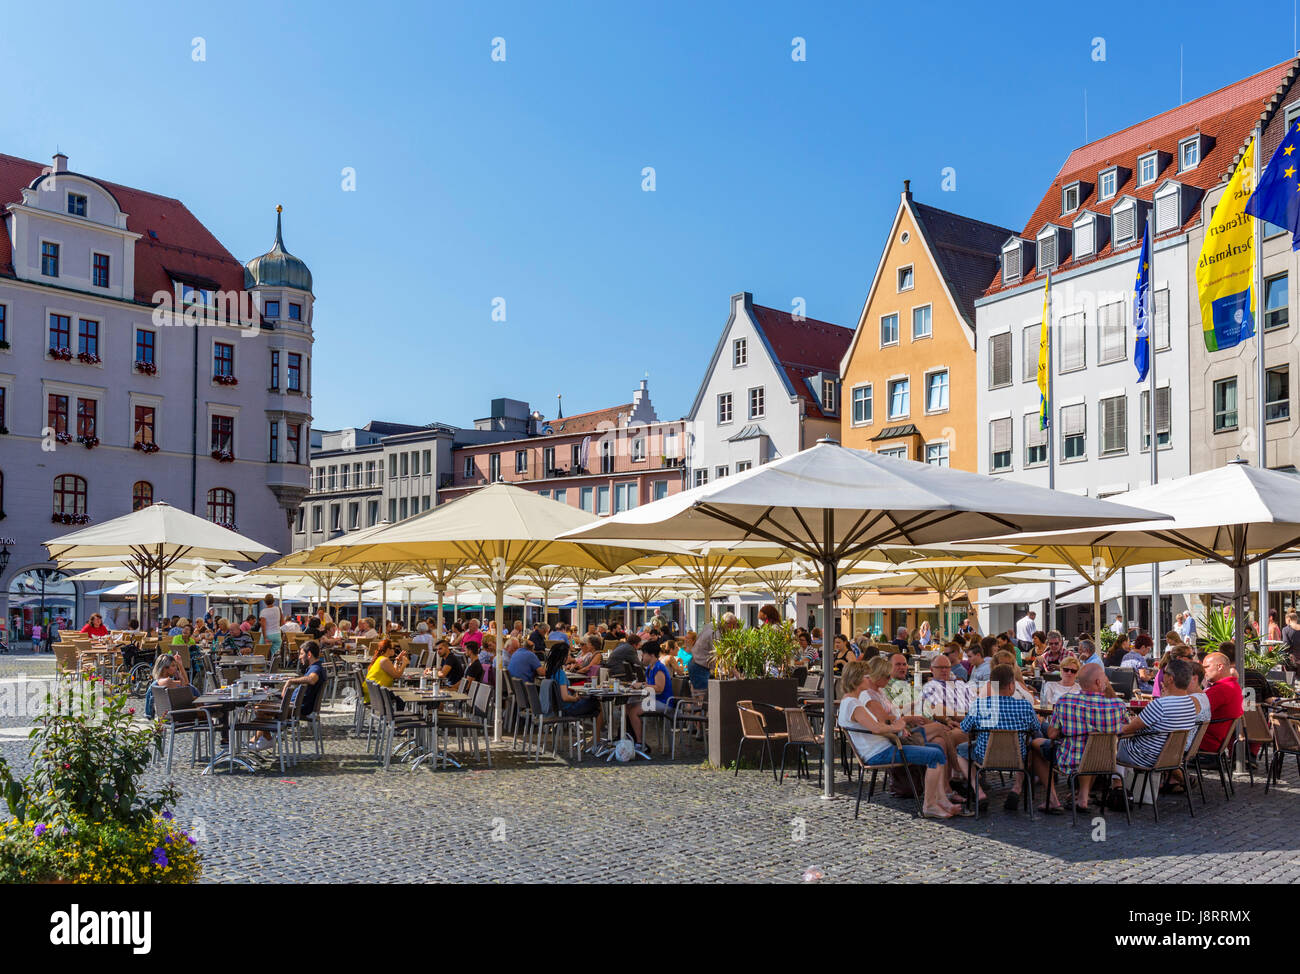 Straßencafé in Rathausplatz, Augsburg, Bayern, Deutschland Stockfoto